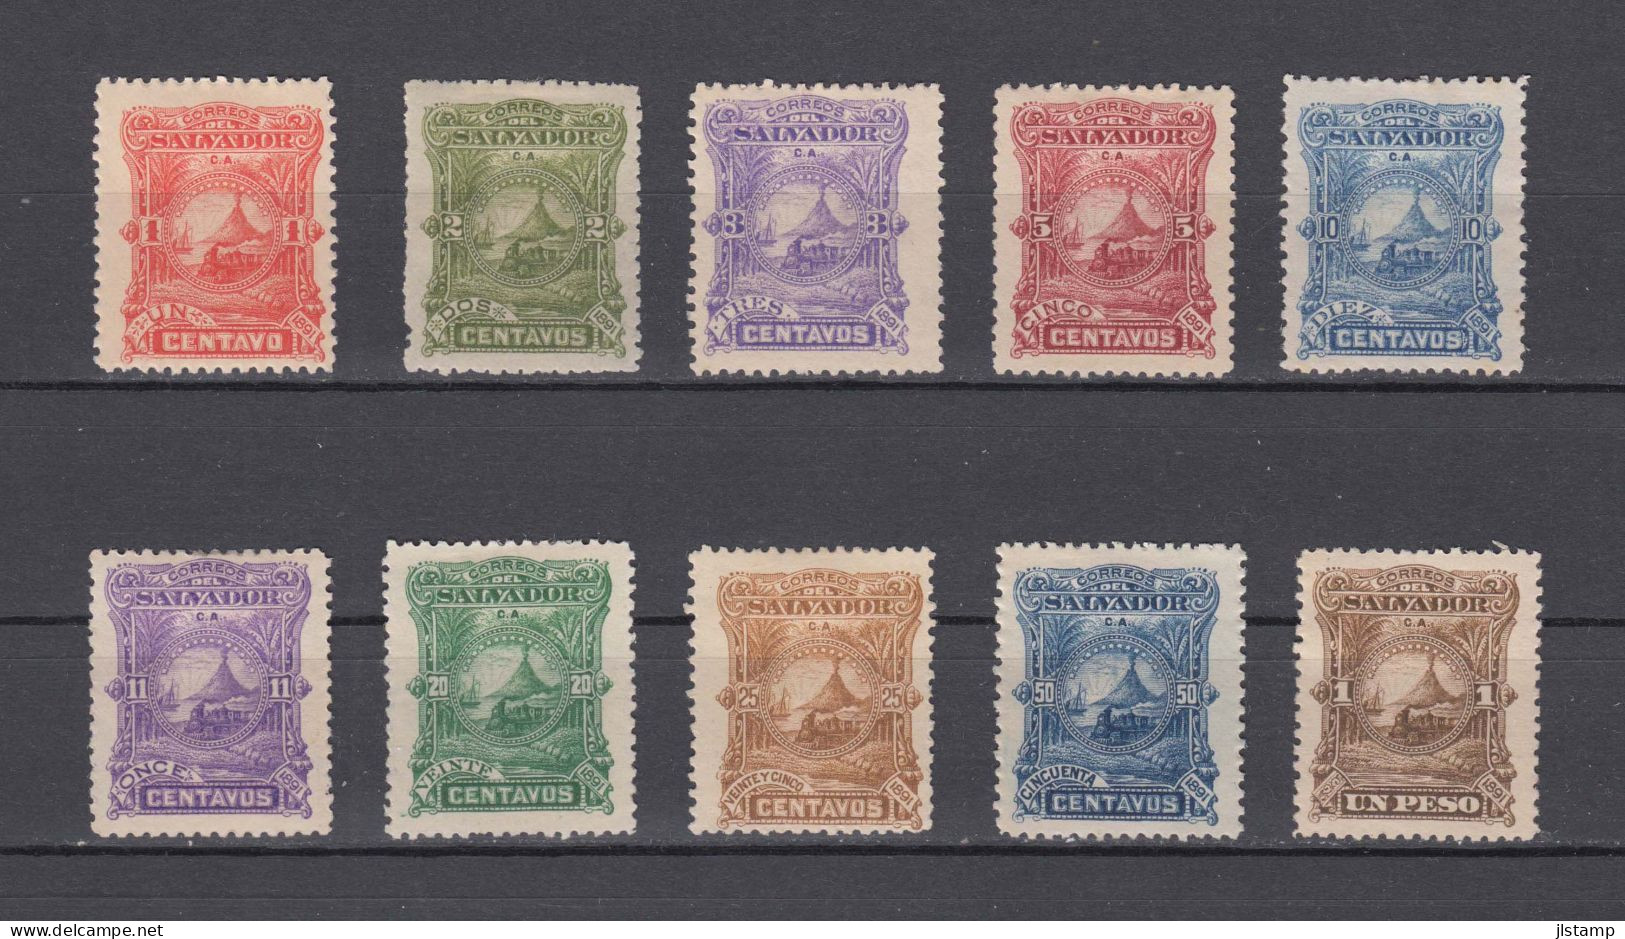 Salvador 1891 Train Stamps Set,Scott#47-56,MH,OG,20c No Gum,VF - Salvador